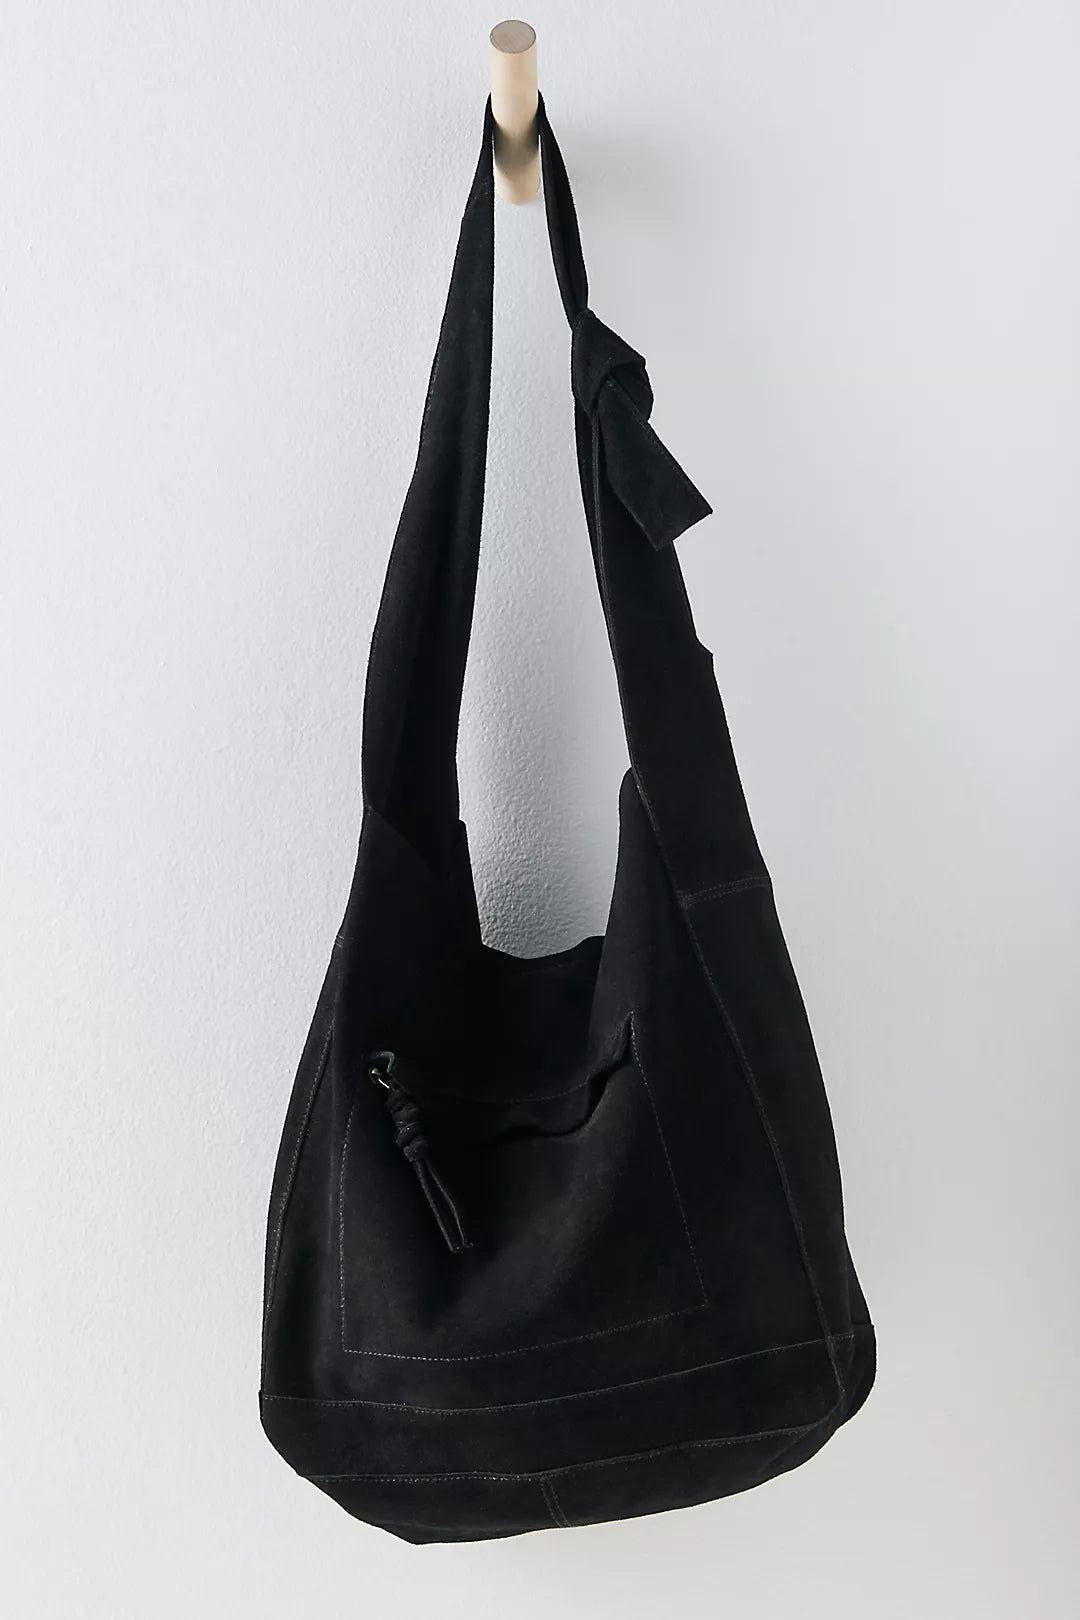 Free People Slouchy Suede Shoulder Bag in Black